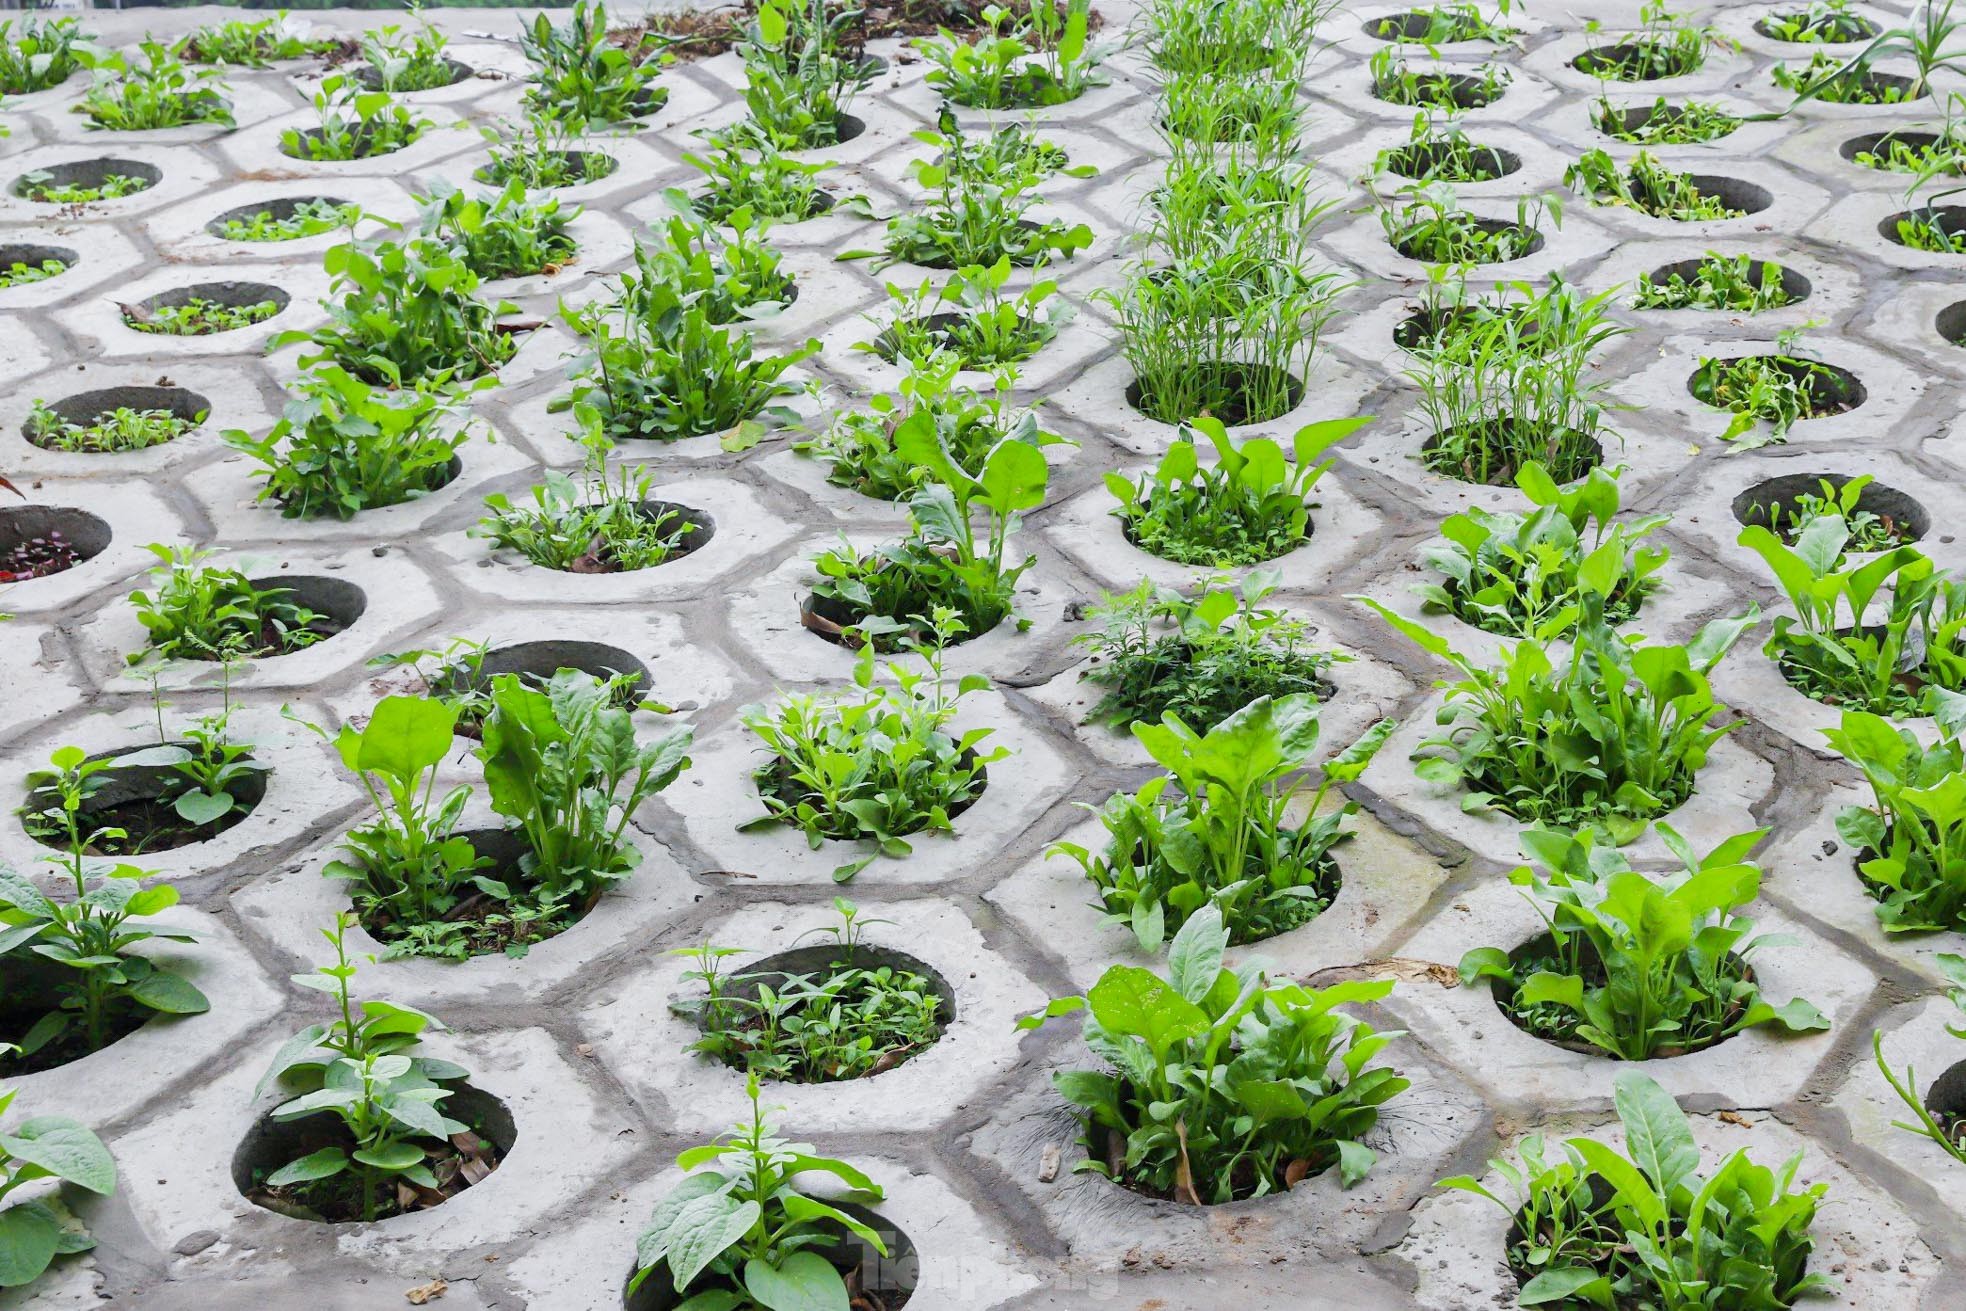 Trên đê Nguyễn Khoái, chỗ trồng rau phủ xanh, chỗ ngập rác ô nhiễm- Ảnh 3.